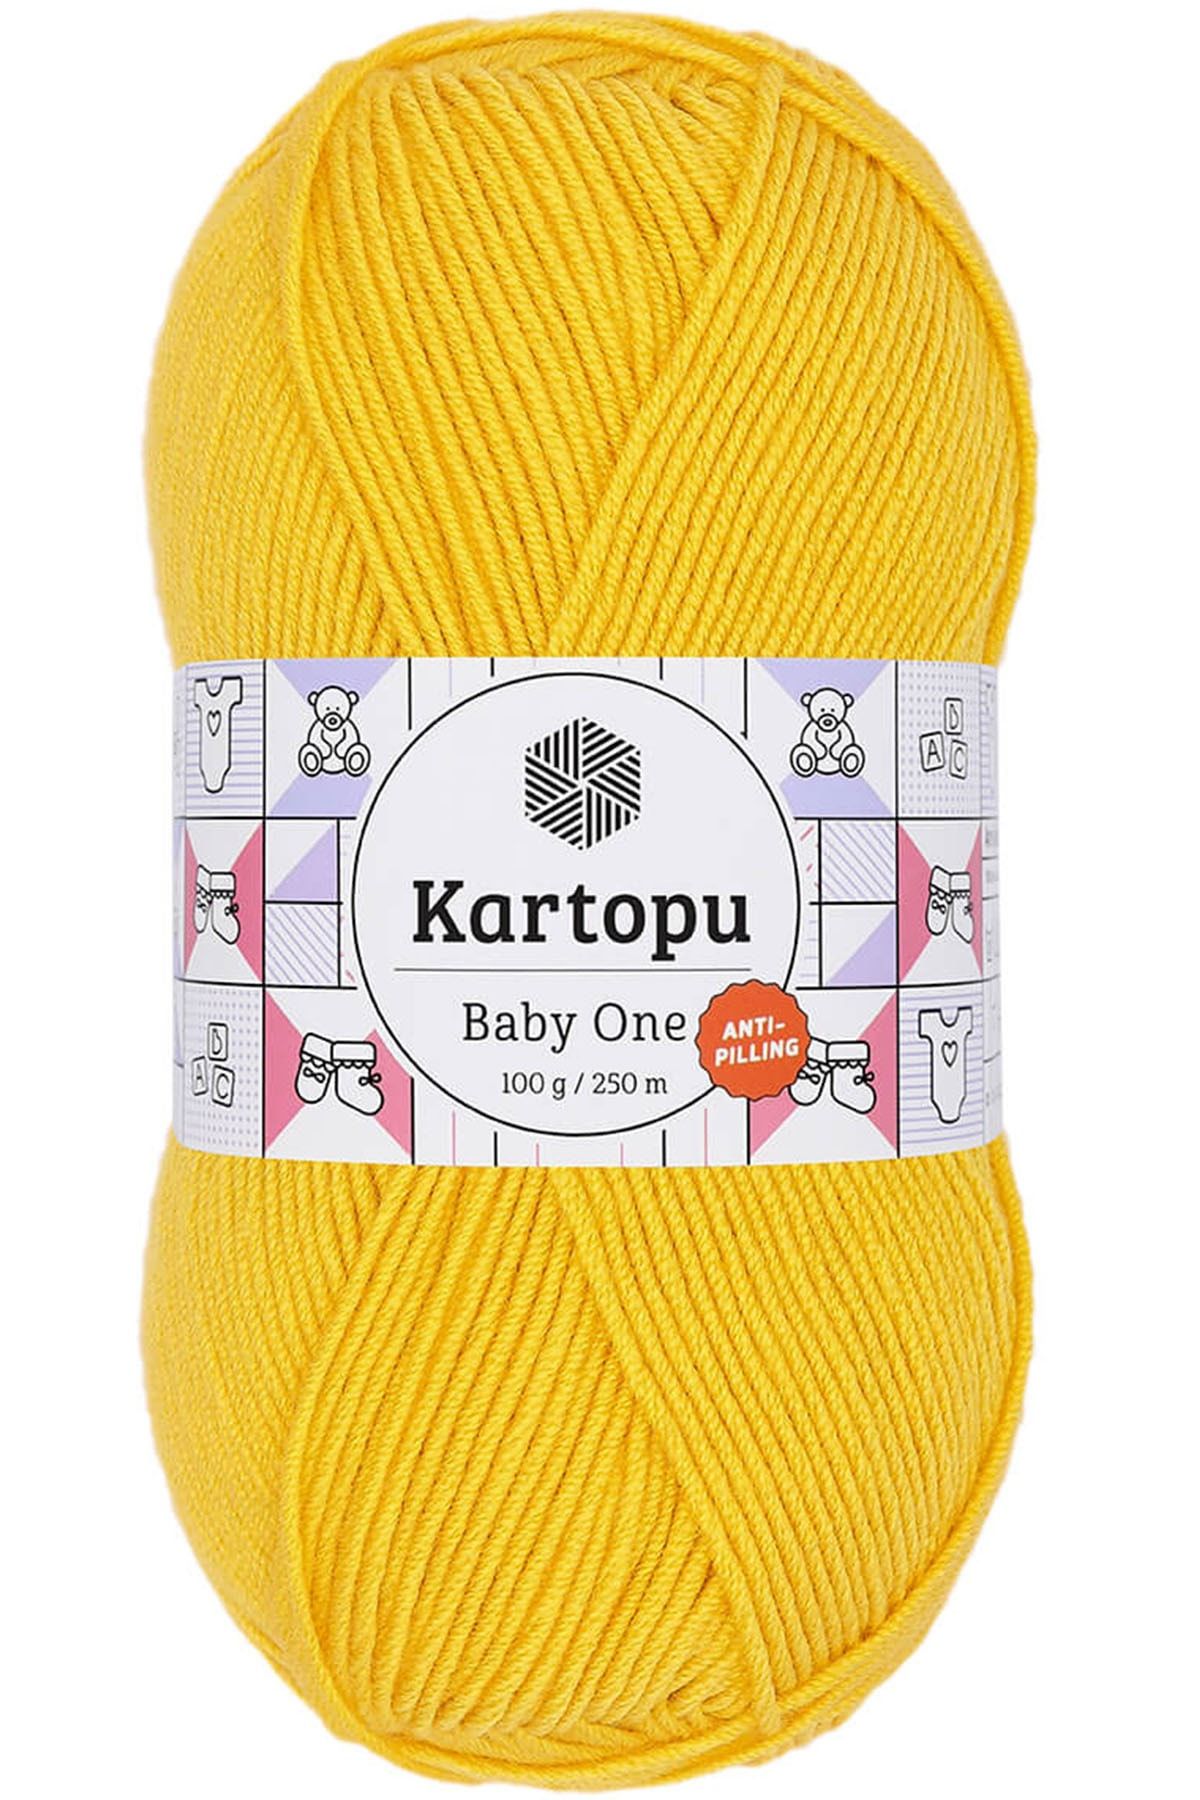 Kartopu Baby One Tüylenmeyen Bebek Yünü Sarı K154